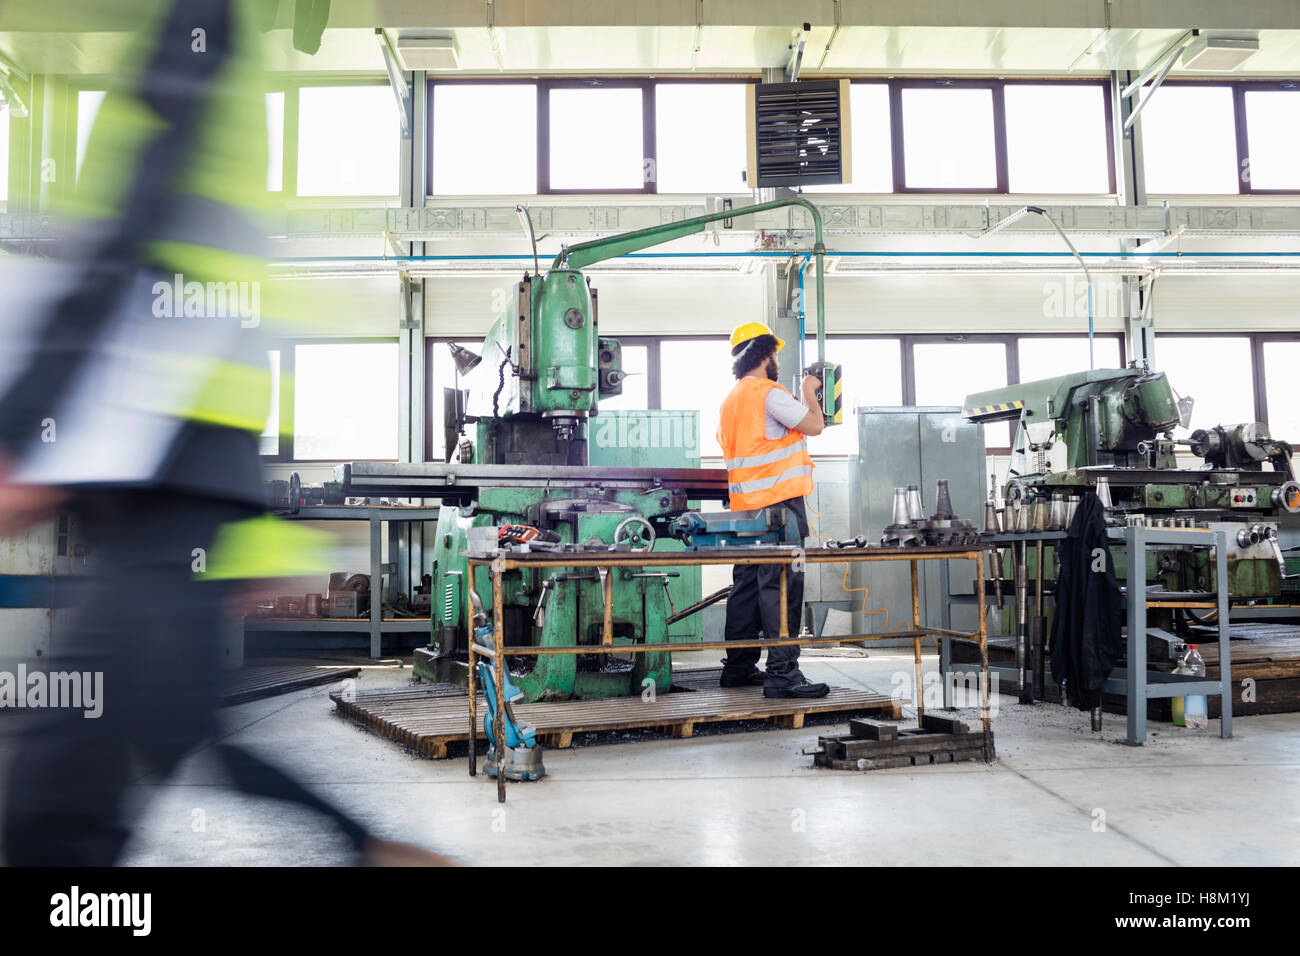 Bedienen von Maschinen bei Metallindustrie Arbeiter Stockfoto